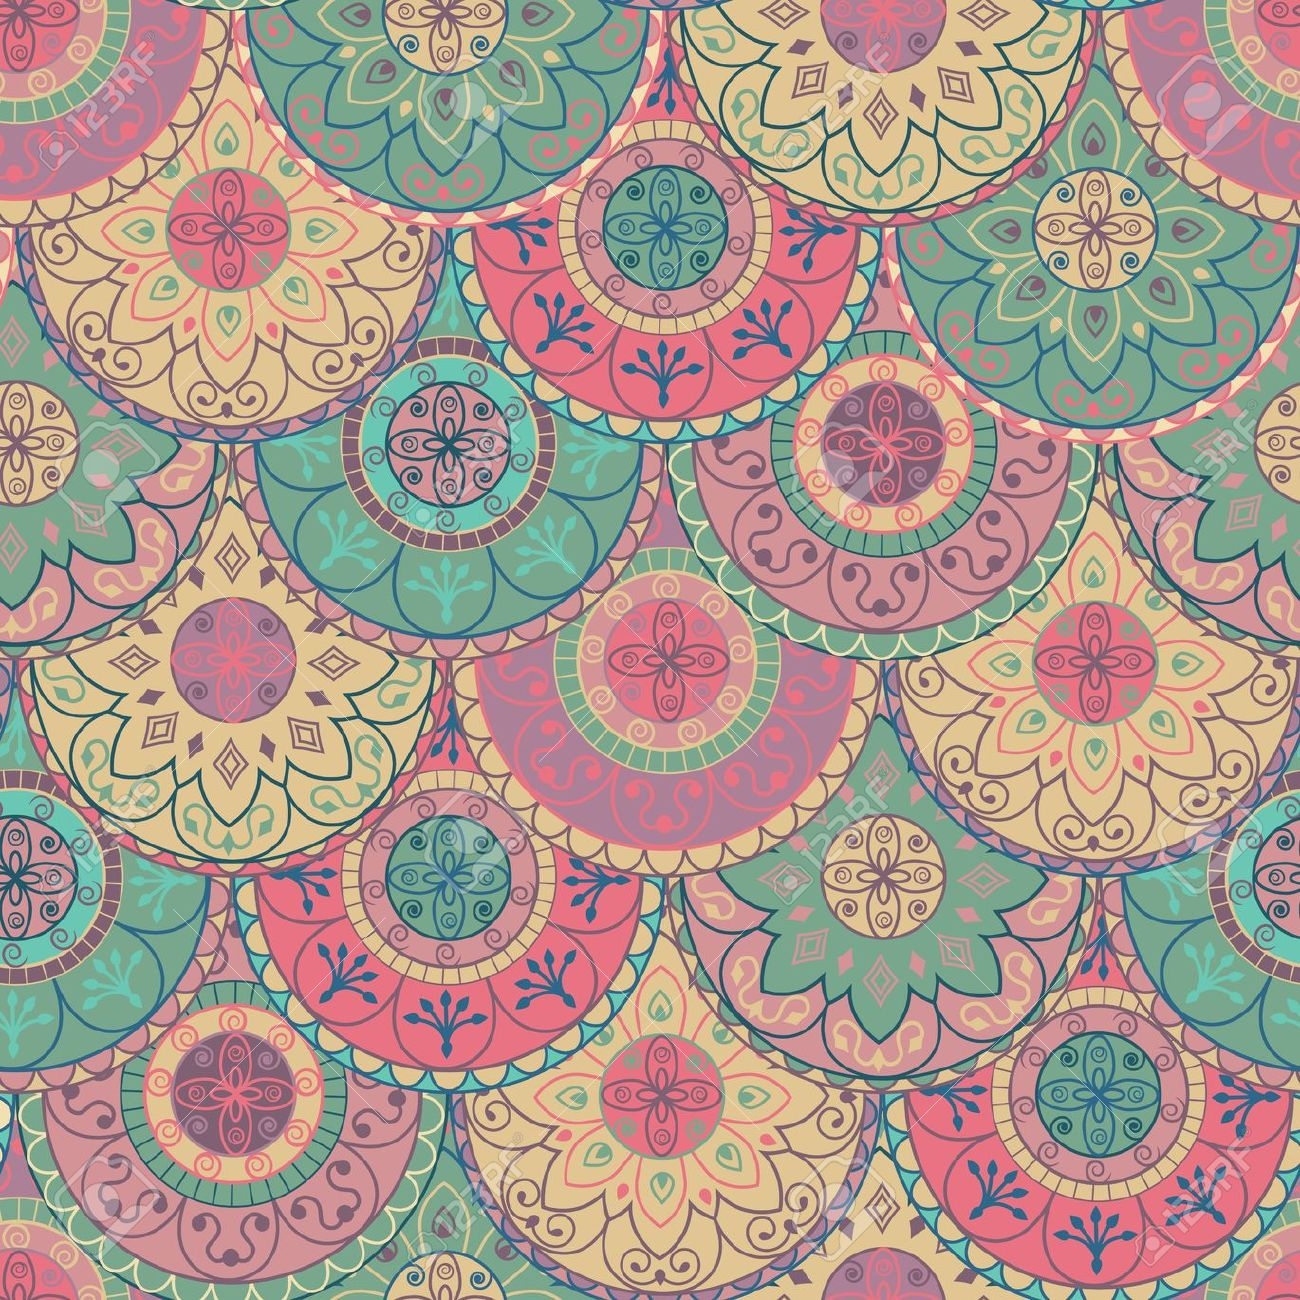 wallpaper tumblr vintage,pattern,orange,pink,visual arts,textile